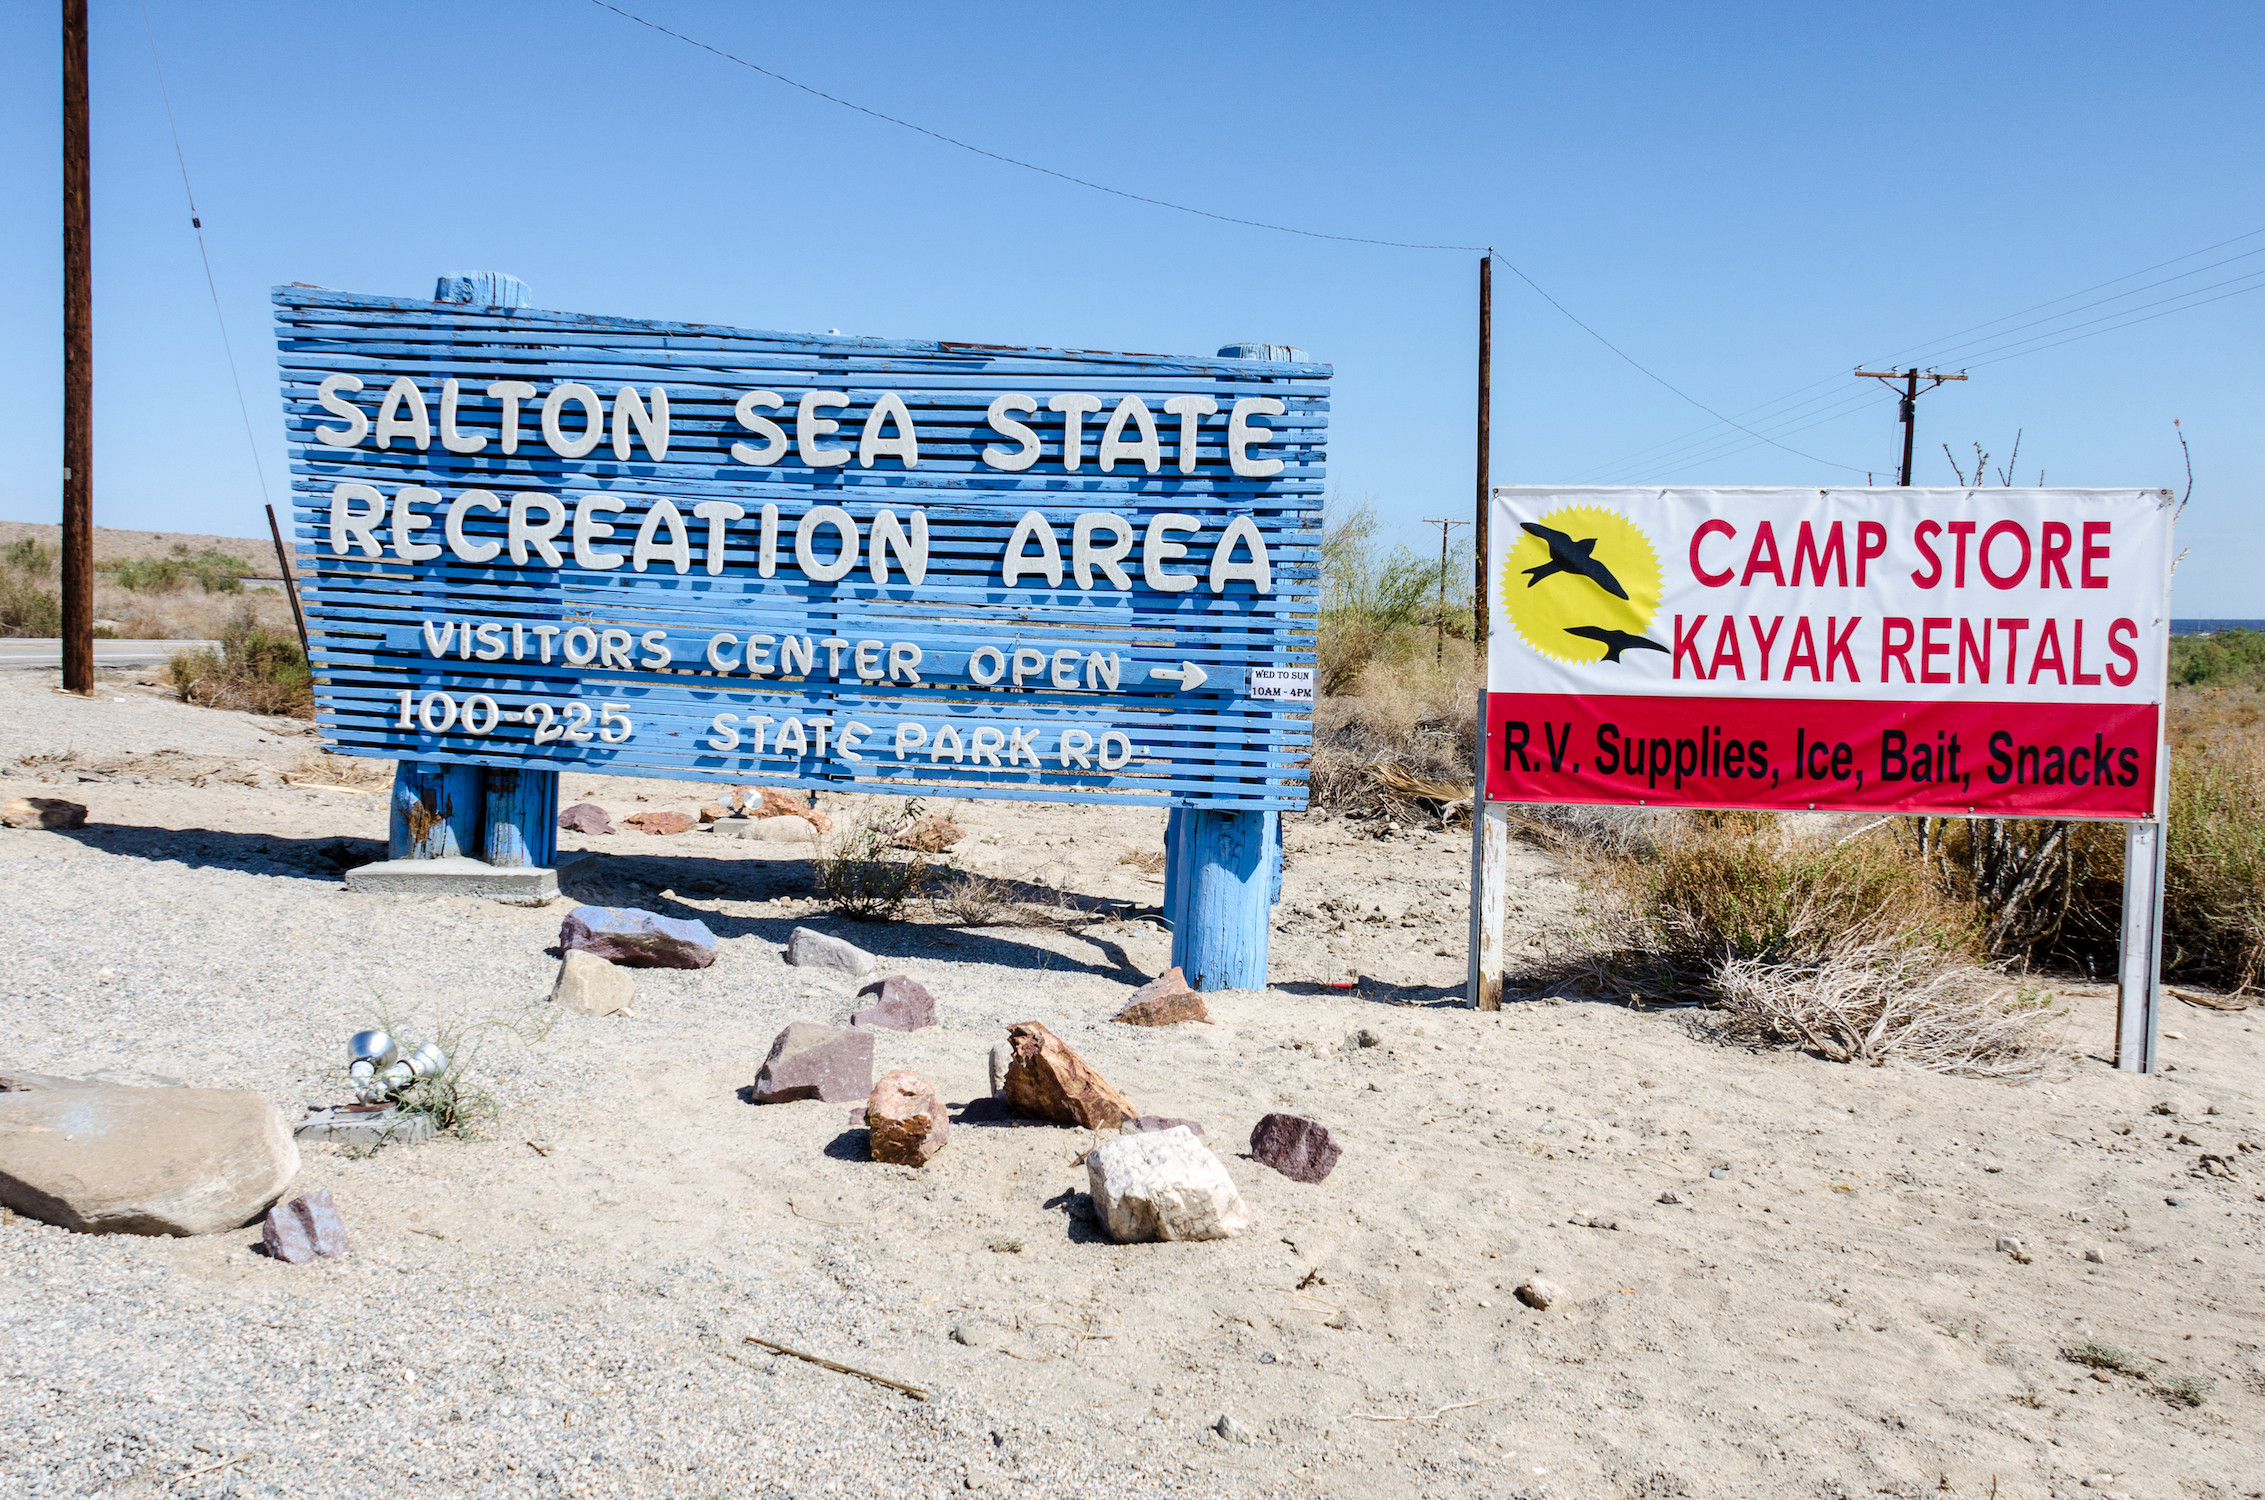 Visite el Mar de Salton, donde el agua es peligrosa, pero el senderismo es excelente - 3